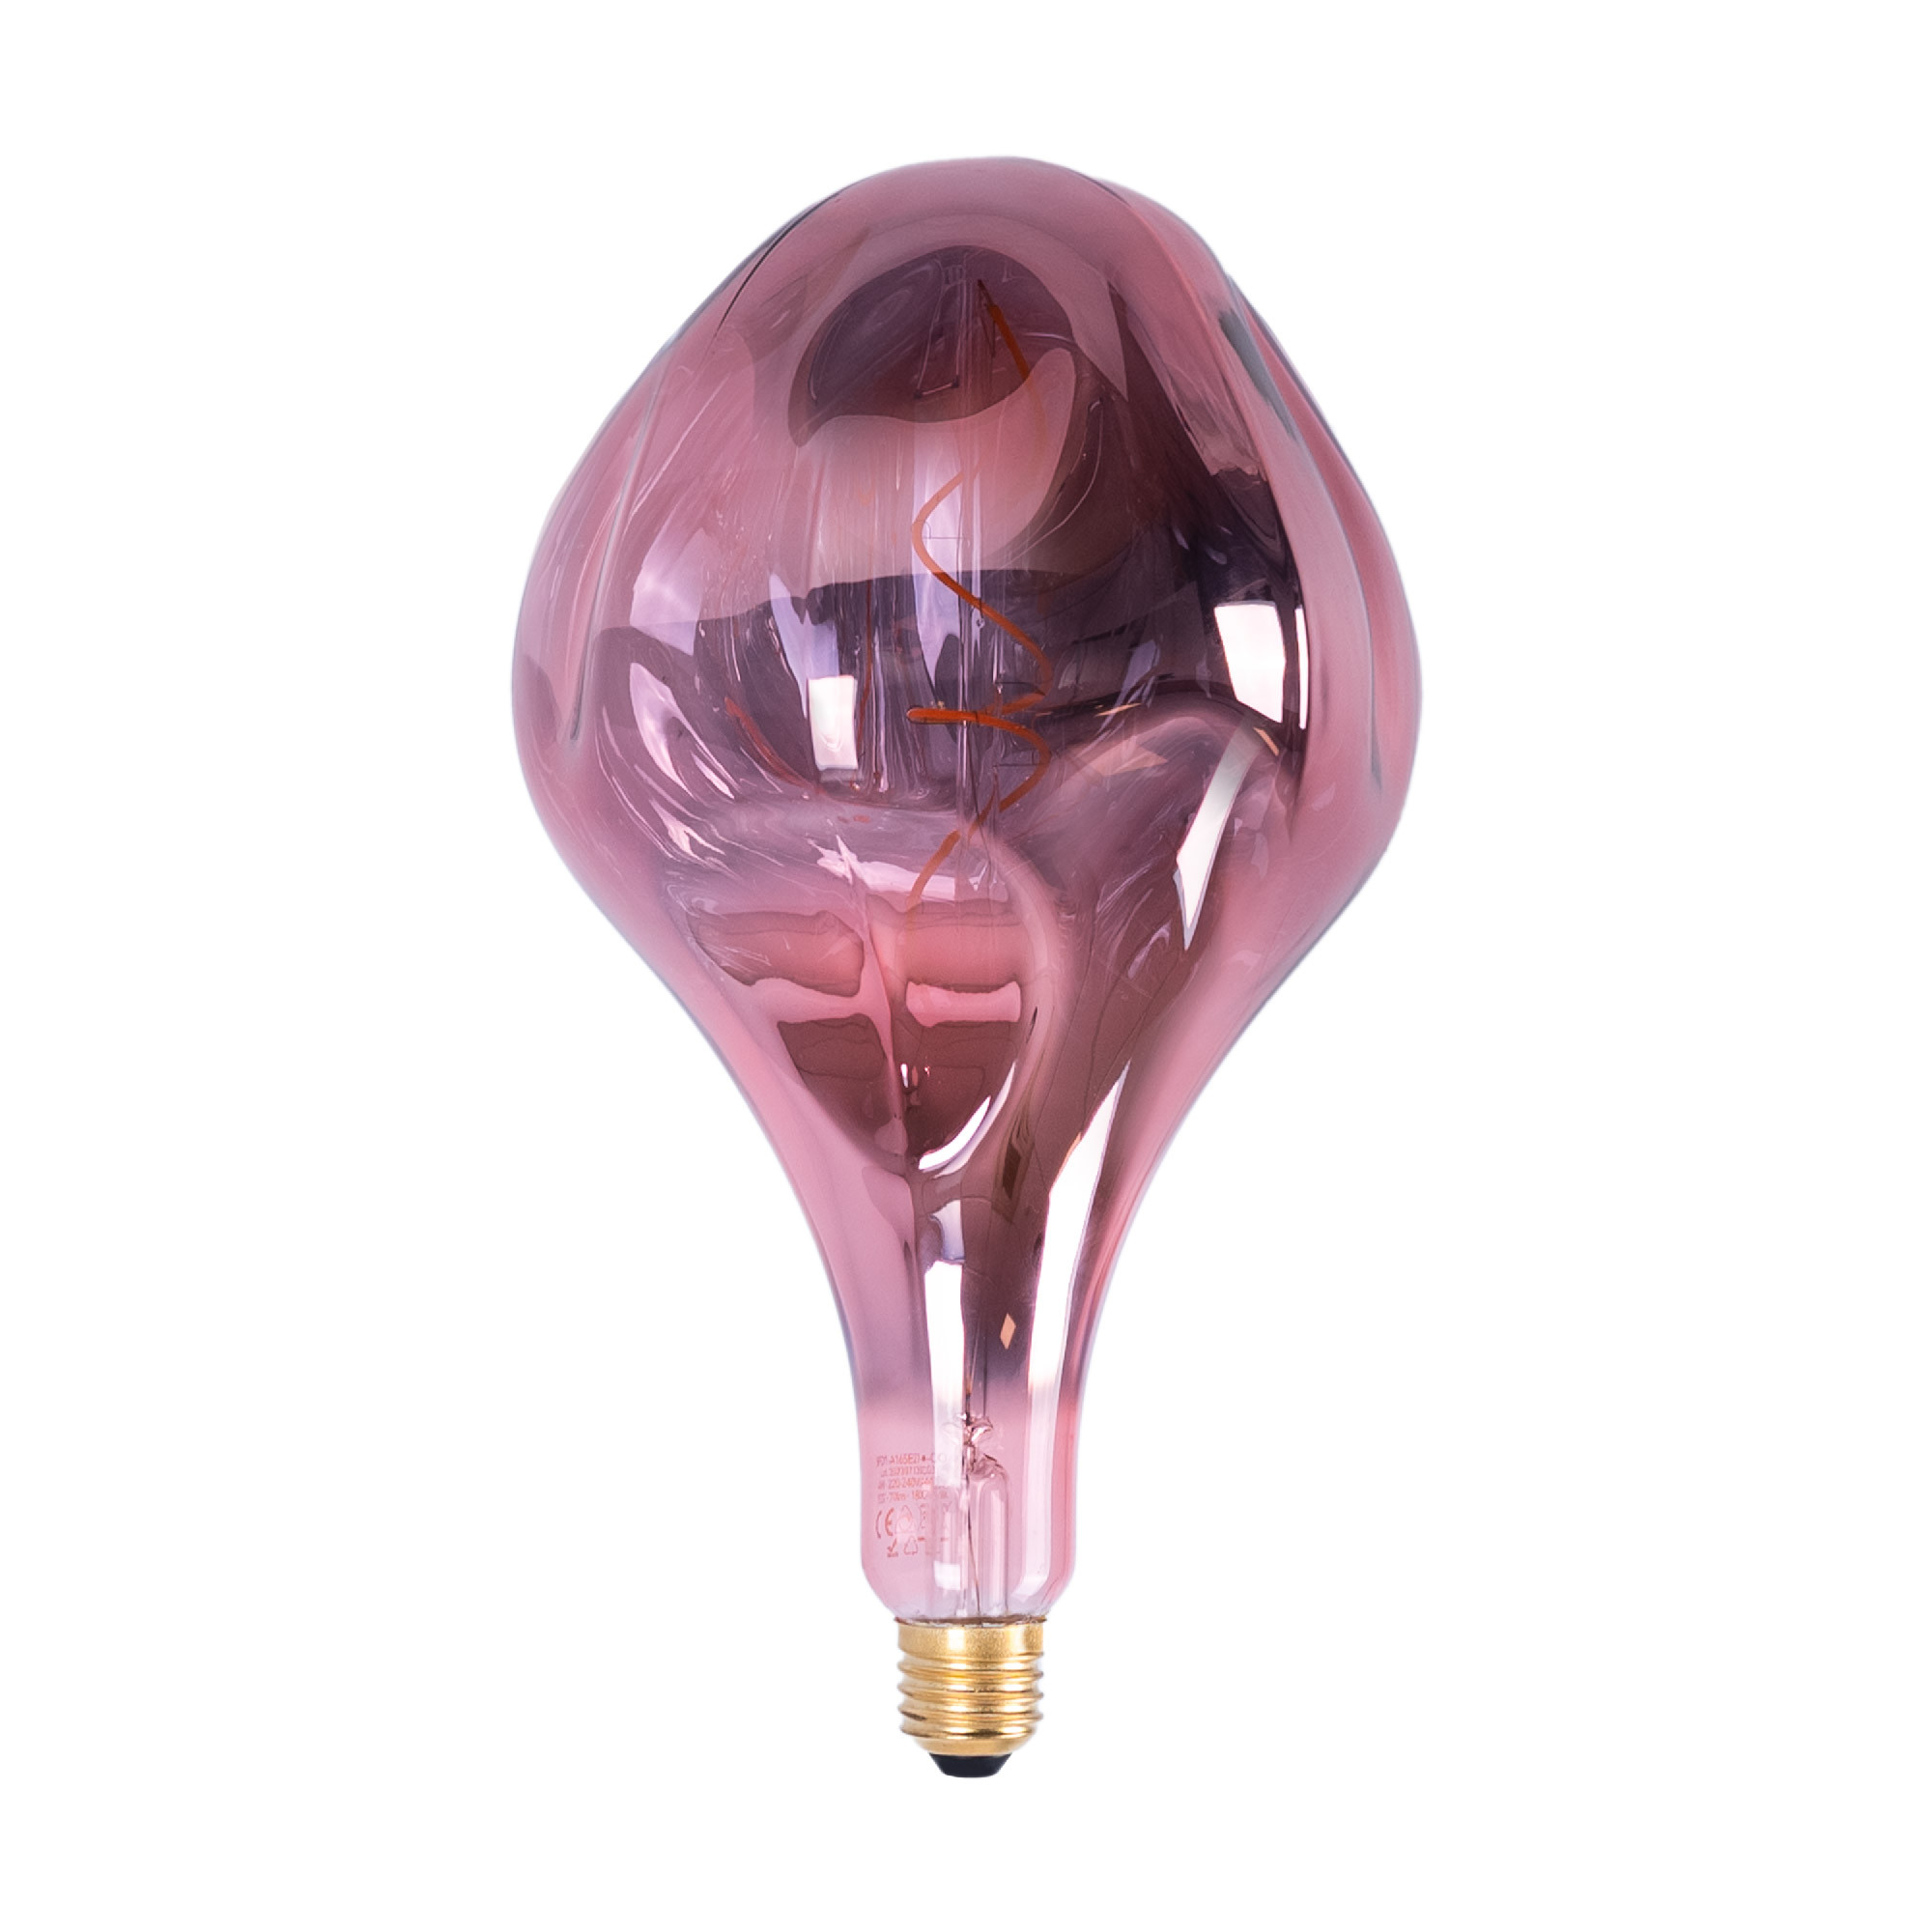 Lampadina a filamento LED Decor - Rame - Dimmerabile - 4W